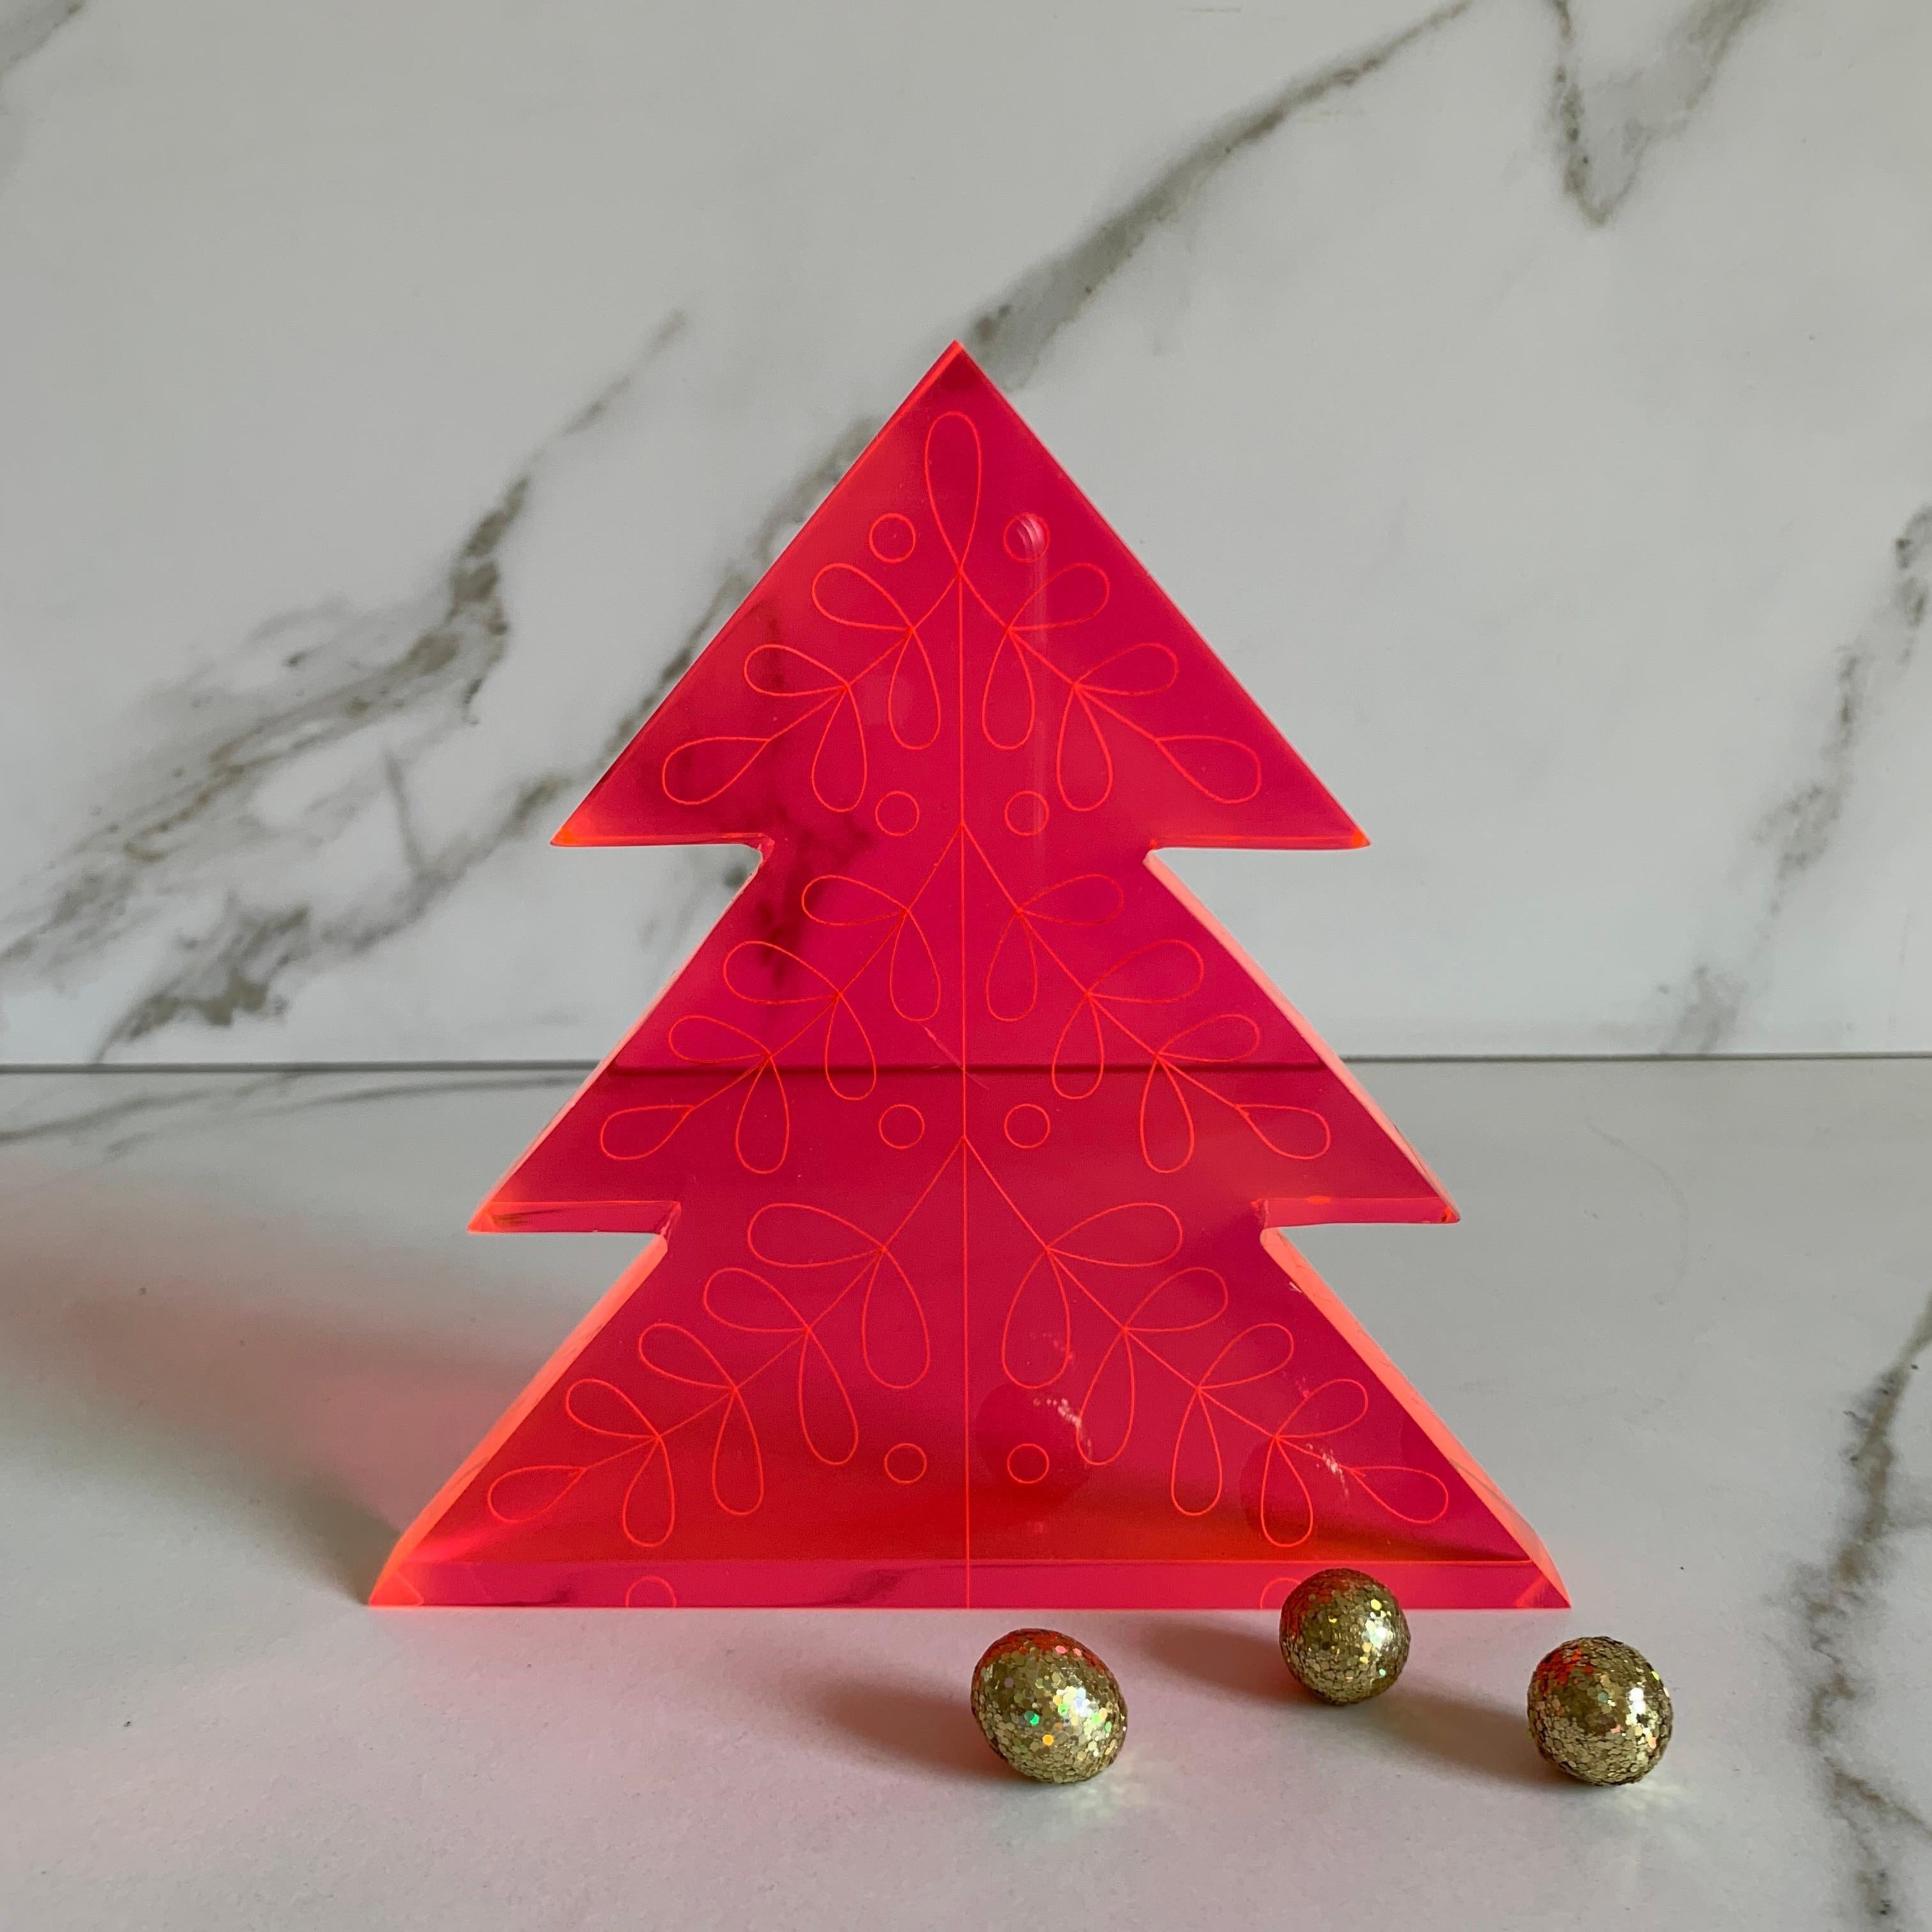 Noël est une saison de joie et, pour nous, cela signifie de la couleur ! Célébrez la saison avec ces sculptures de sapins de Noël colorées, amusantes et modernes, et donnez une nouvelle tournure à la palette de couleurs traditionnelle de Noël. Ces